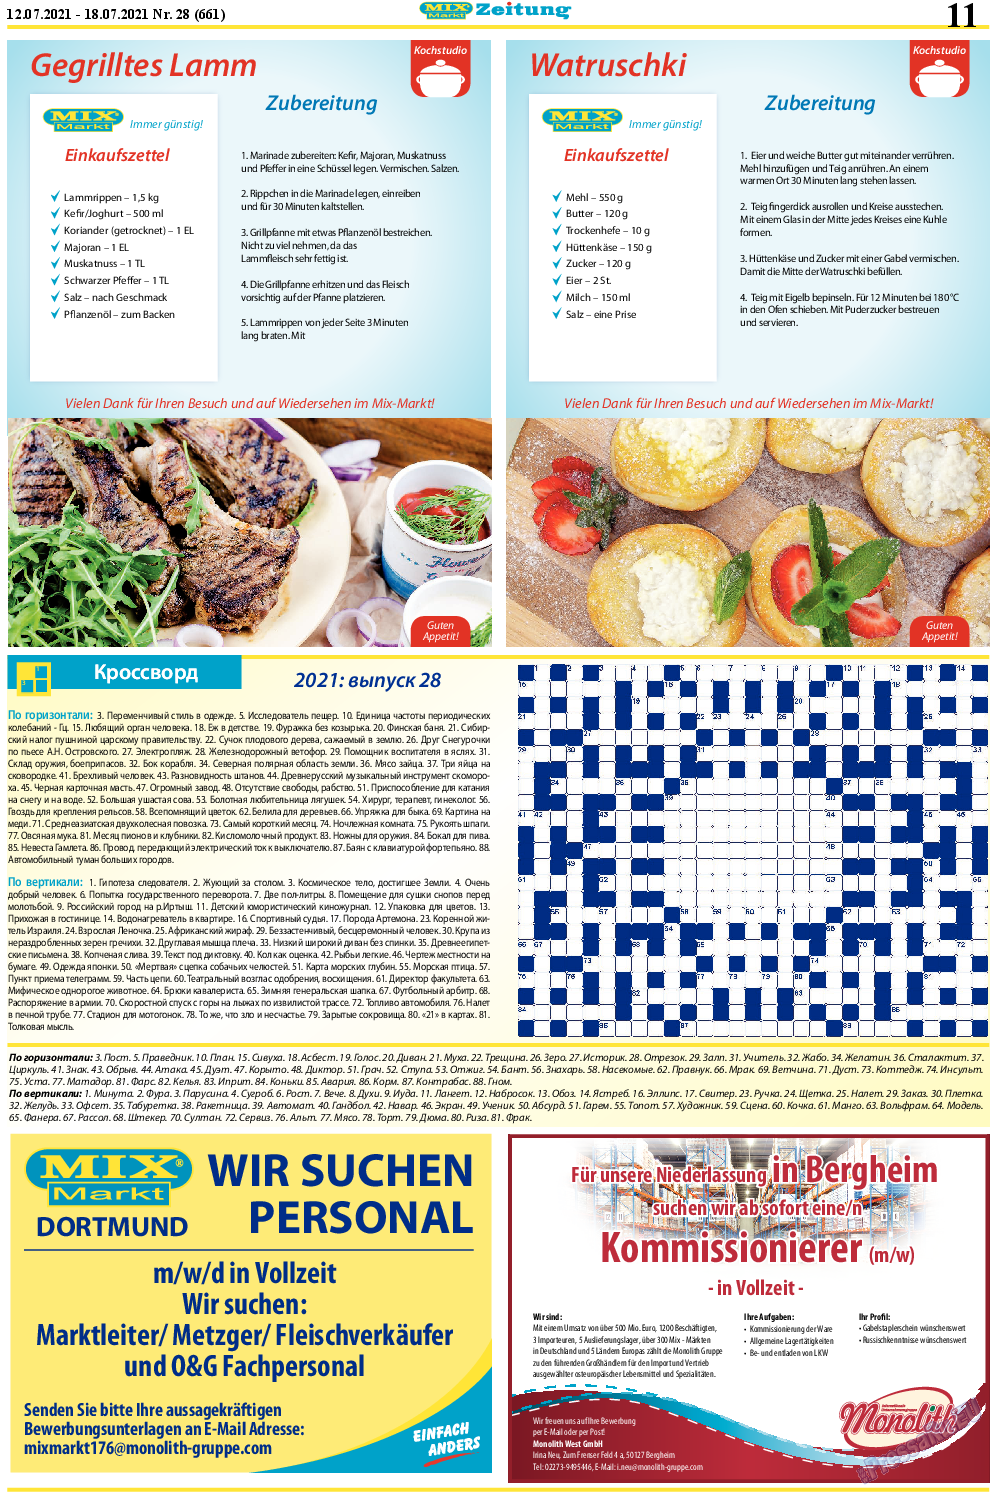 MIX-Markt Zeitung, газета. 2021 №28 стр.11